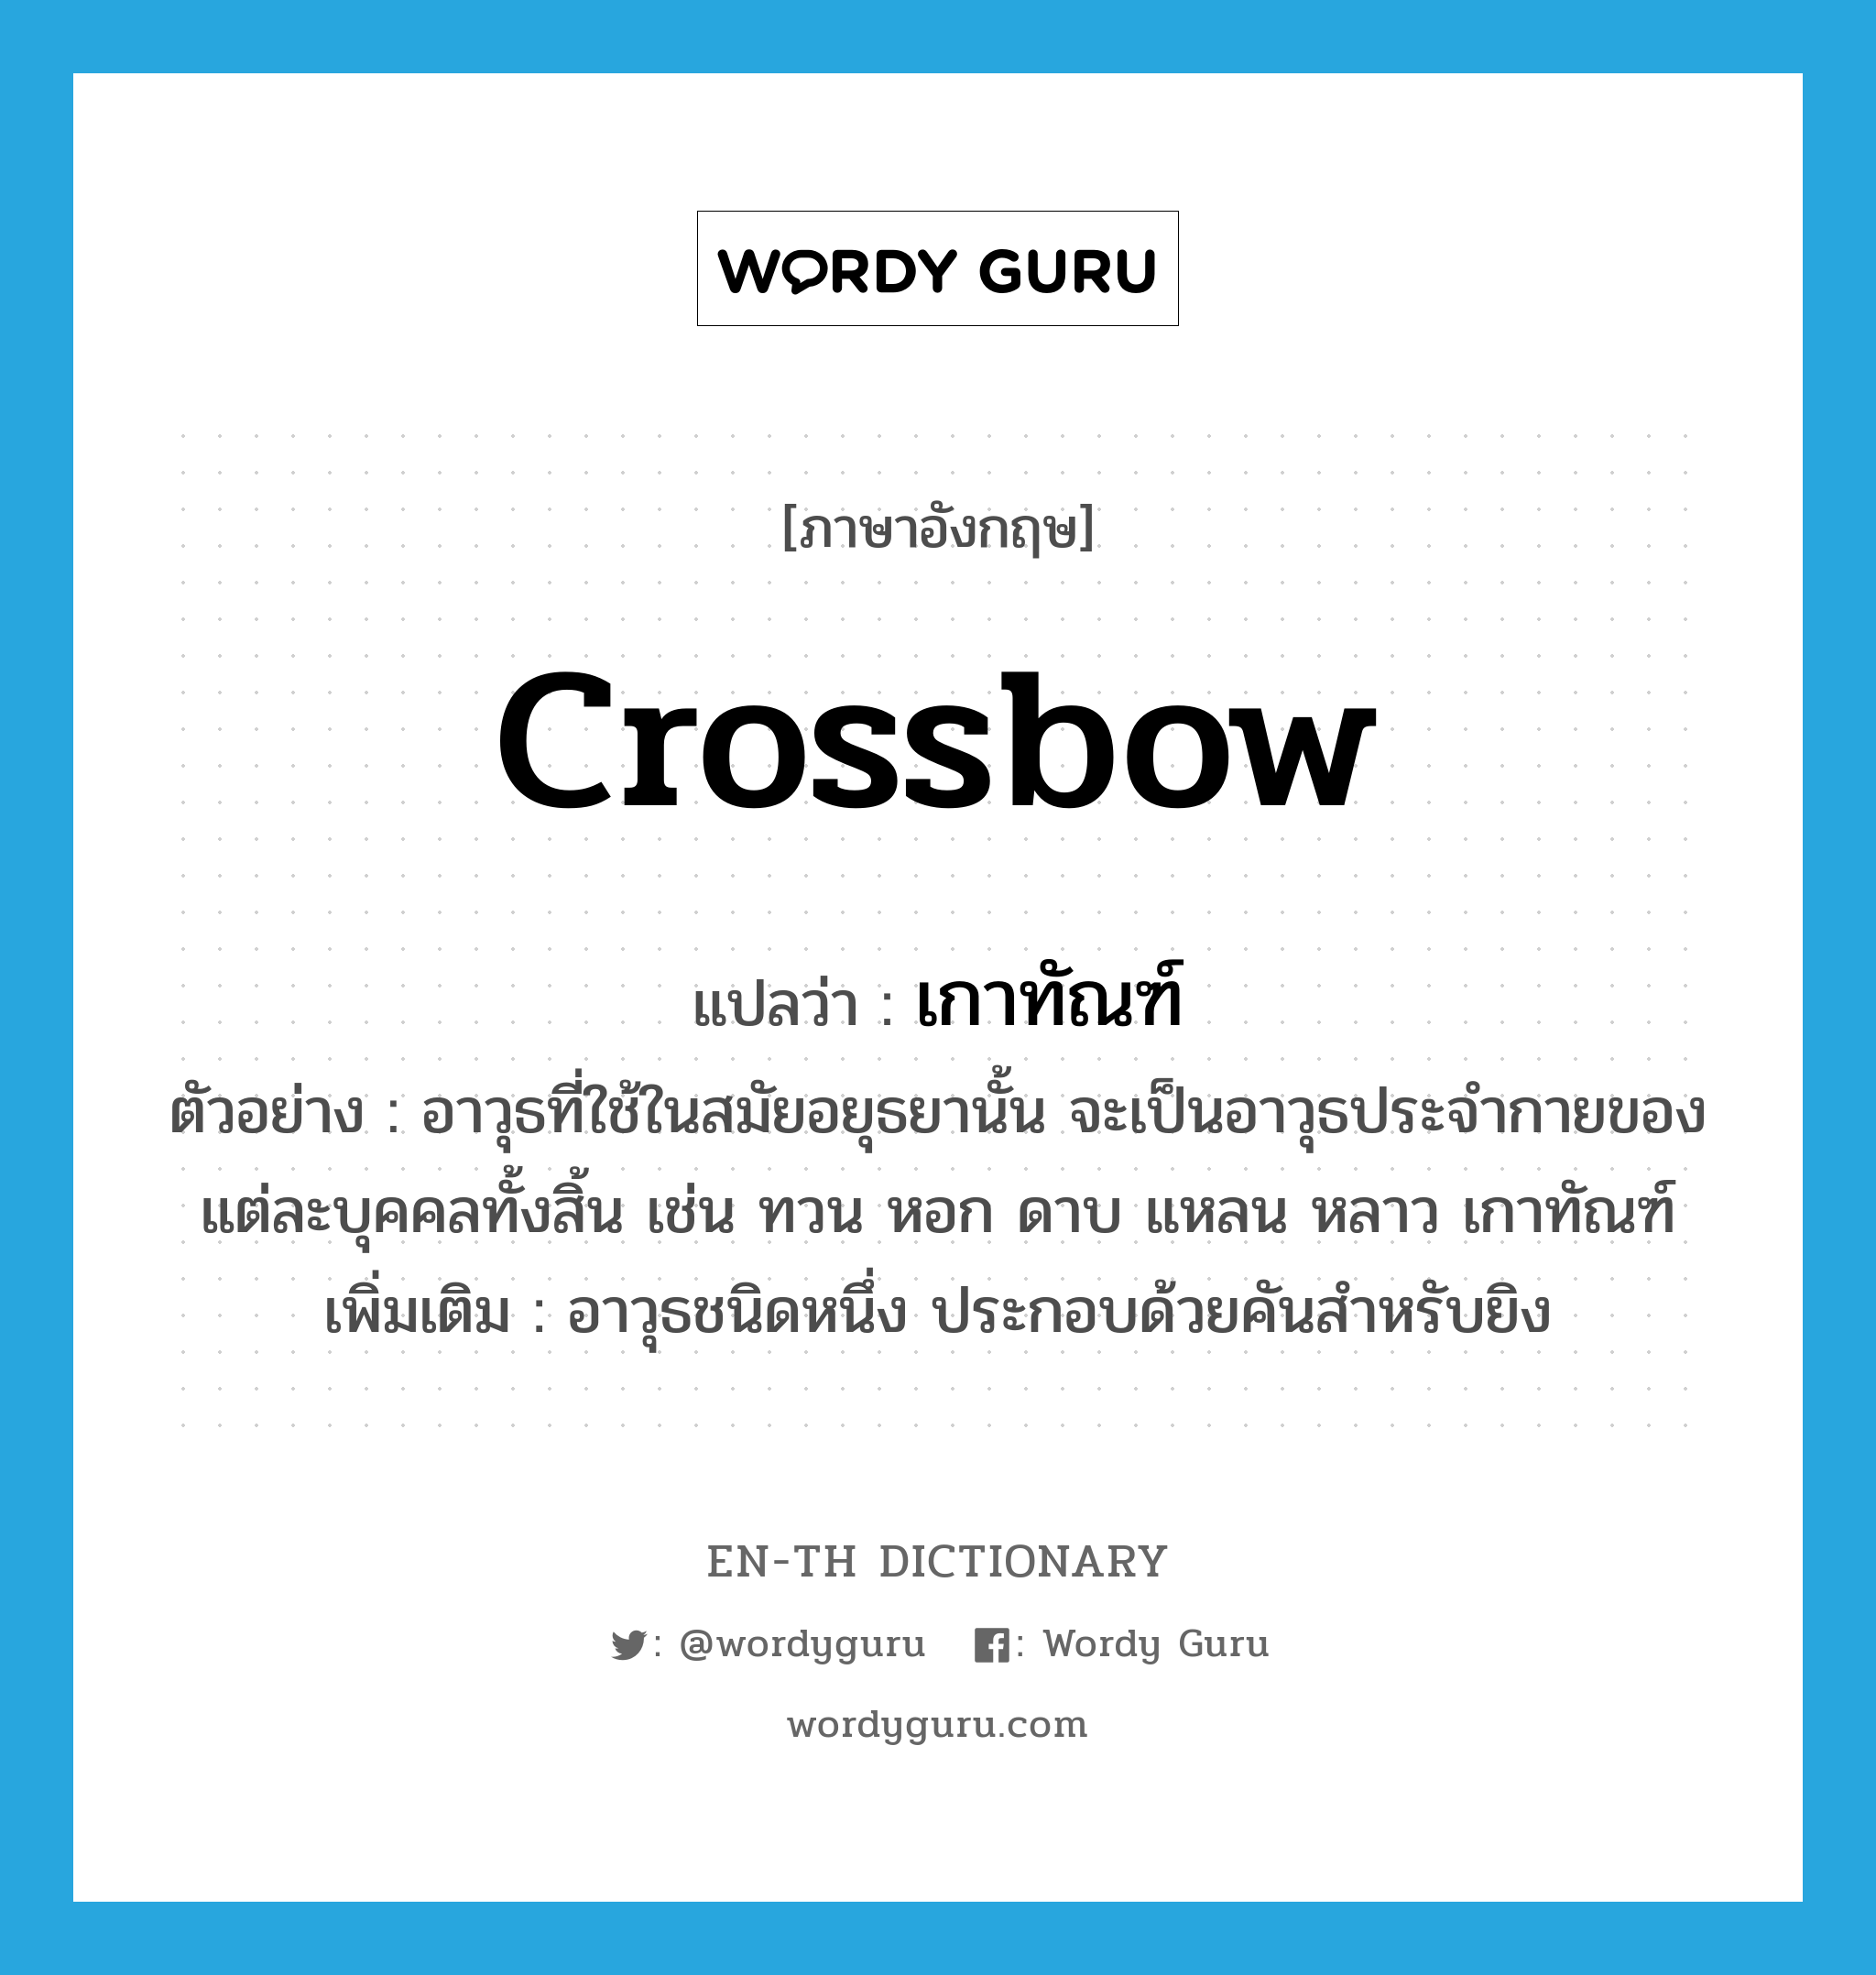 crossbow แปลว่า?, คำศัพท์ภาษาอังกฤษ crossbow แปลว่า เกาทัณฑ์ ประเภท N ตัวอย่าง อาวุธที่ใช้ในสมัยอยุธยานั้น จะเป็นอาวุธประจำกายของแต่ละบุคคลทั้งสิ้น เช่น ทวน หอก ดาบ แหลน หลาว เกาทัณฑ์ เพิ่มเติม อาวุธชนิดหนึ่ง ประกอบด้วยคันสำหรับยิง หมวด N